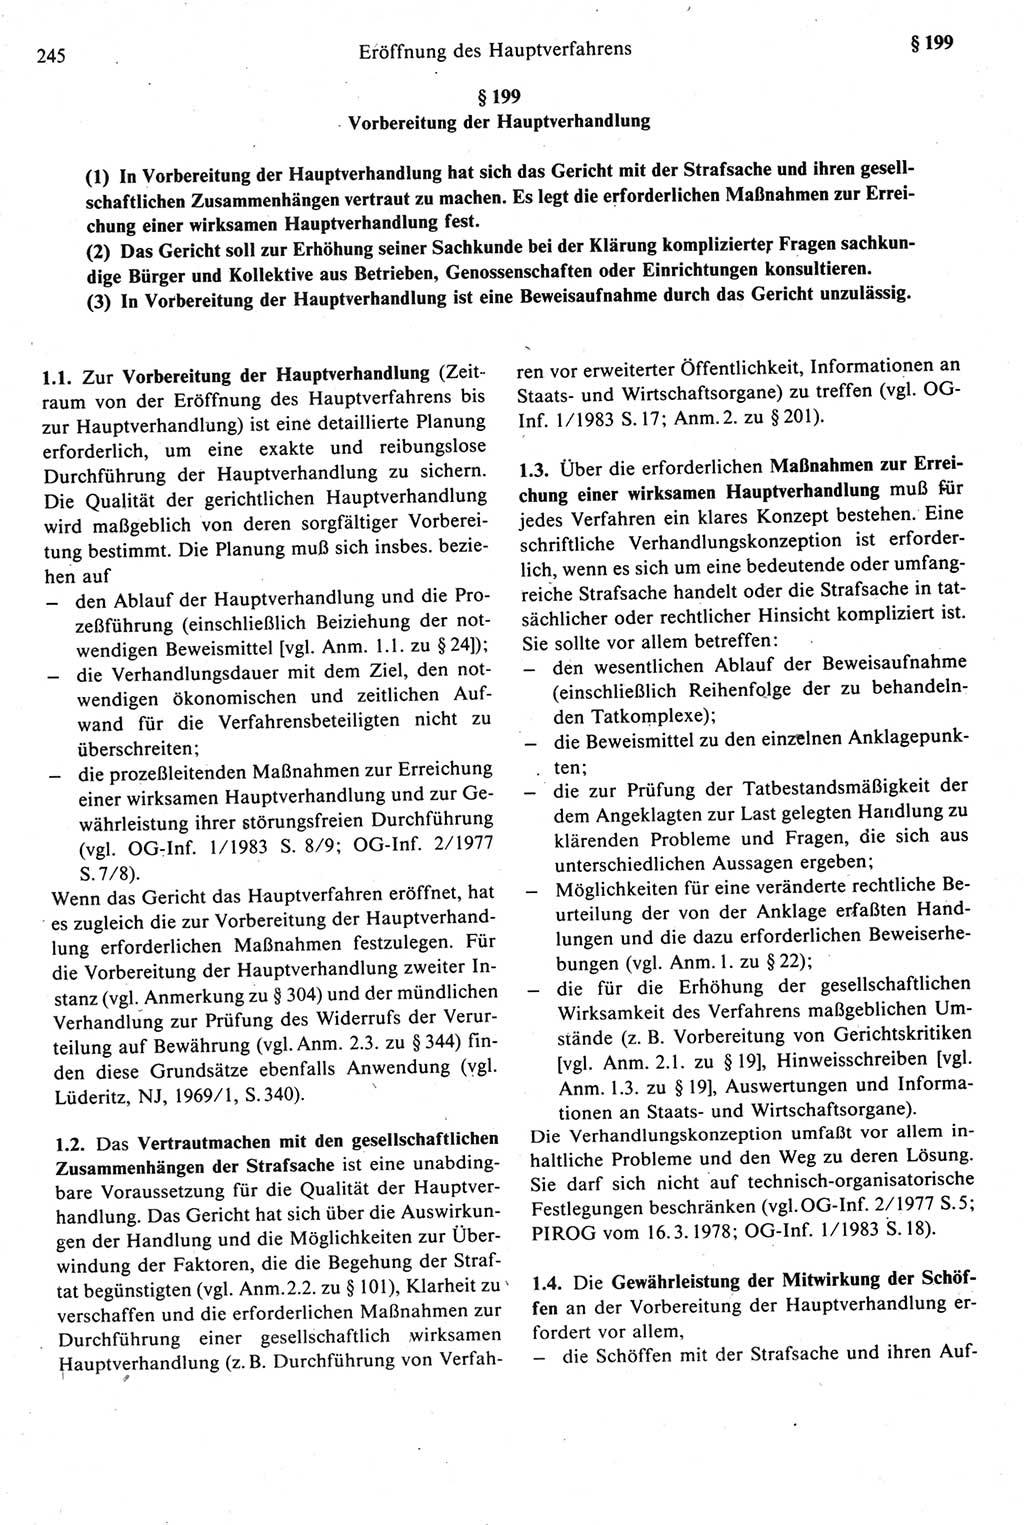 Strafprozeßrecht der DDR [Deutsche Demokratische Republik], Kommentar zur Strafprozeßordnung (StPO) 1987, Seite 245 (Strafprozeßr. DDR Komm. StPO 1987, S. 245)